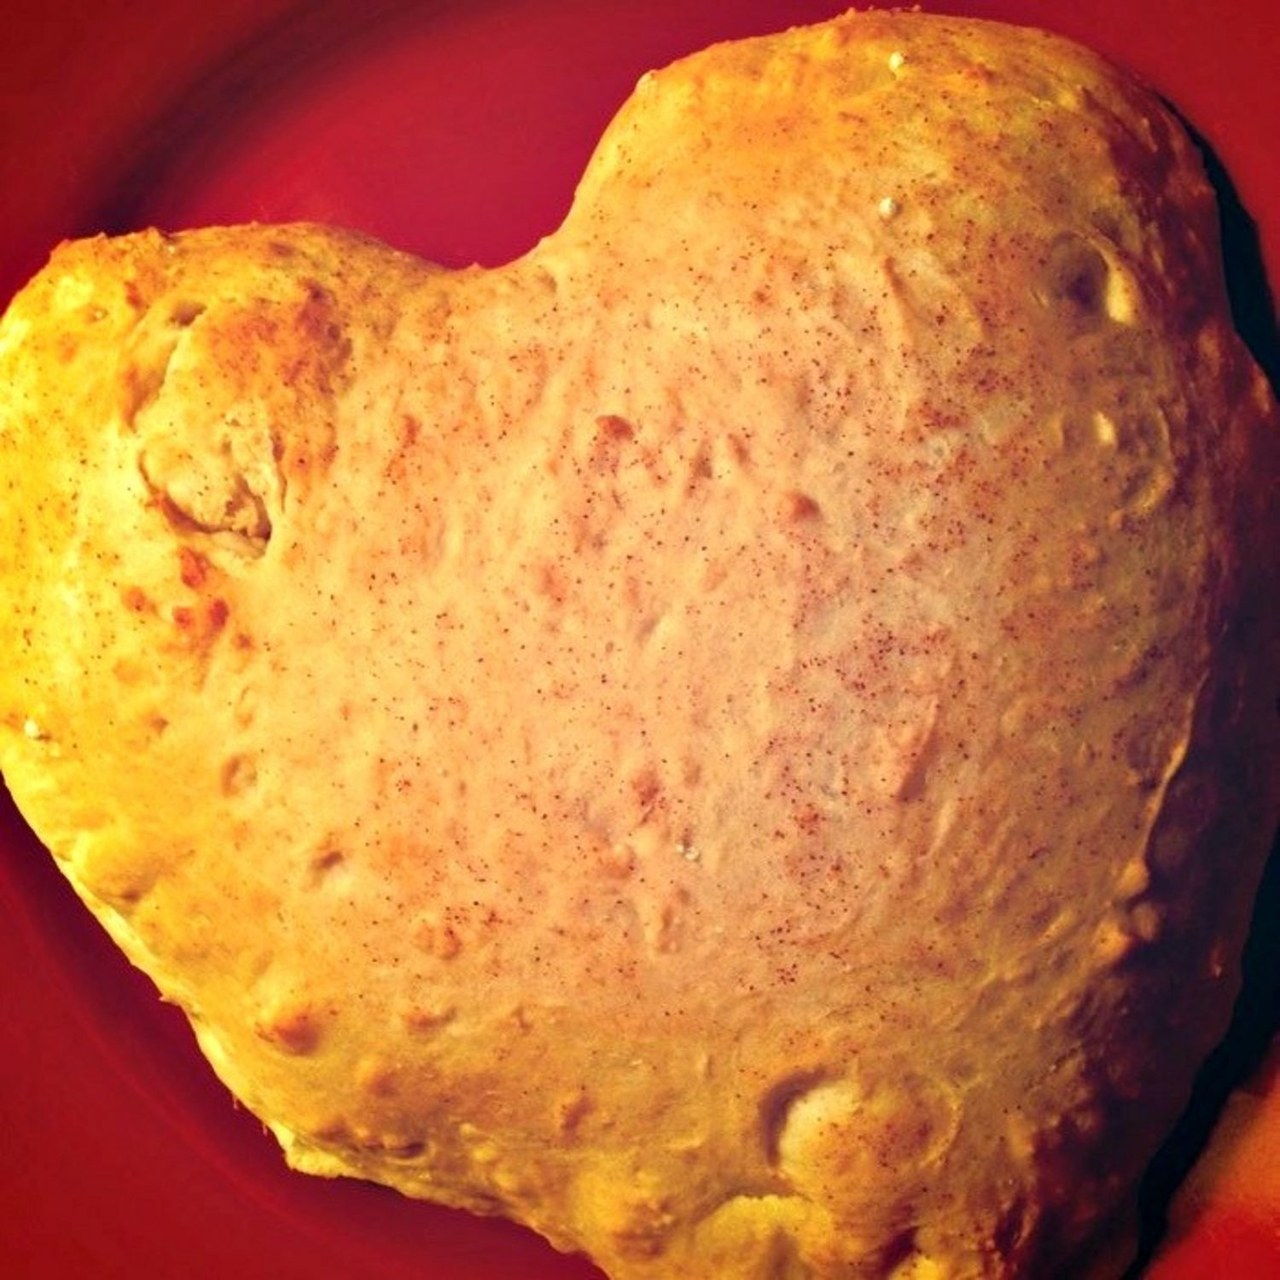 Soleil moon frye heart bread